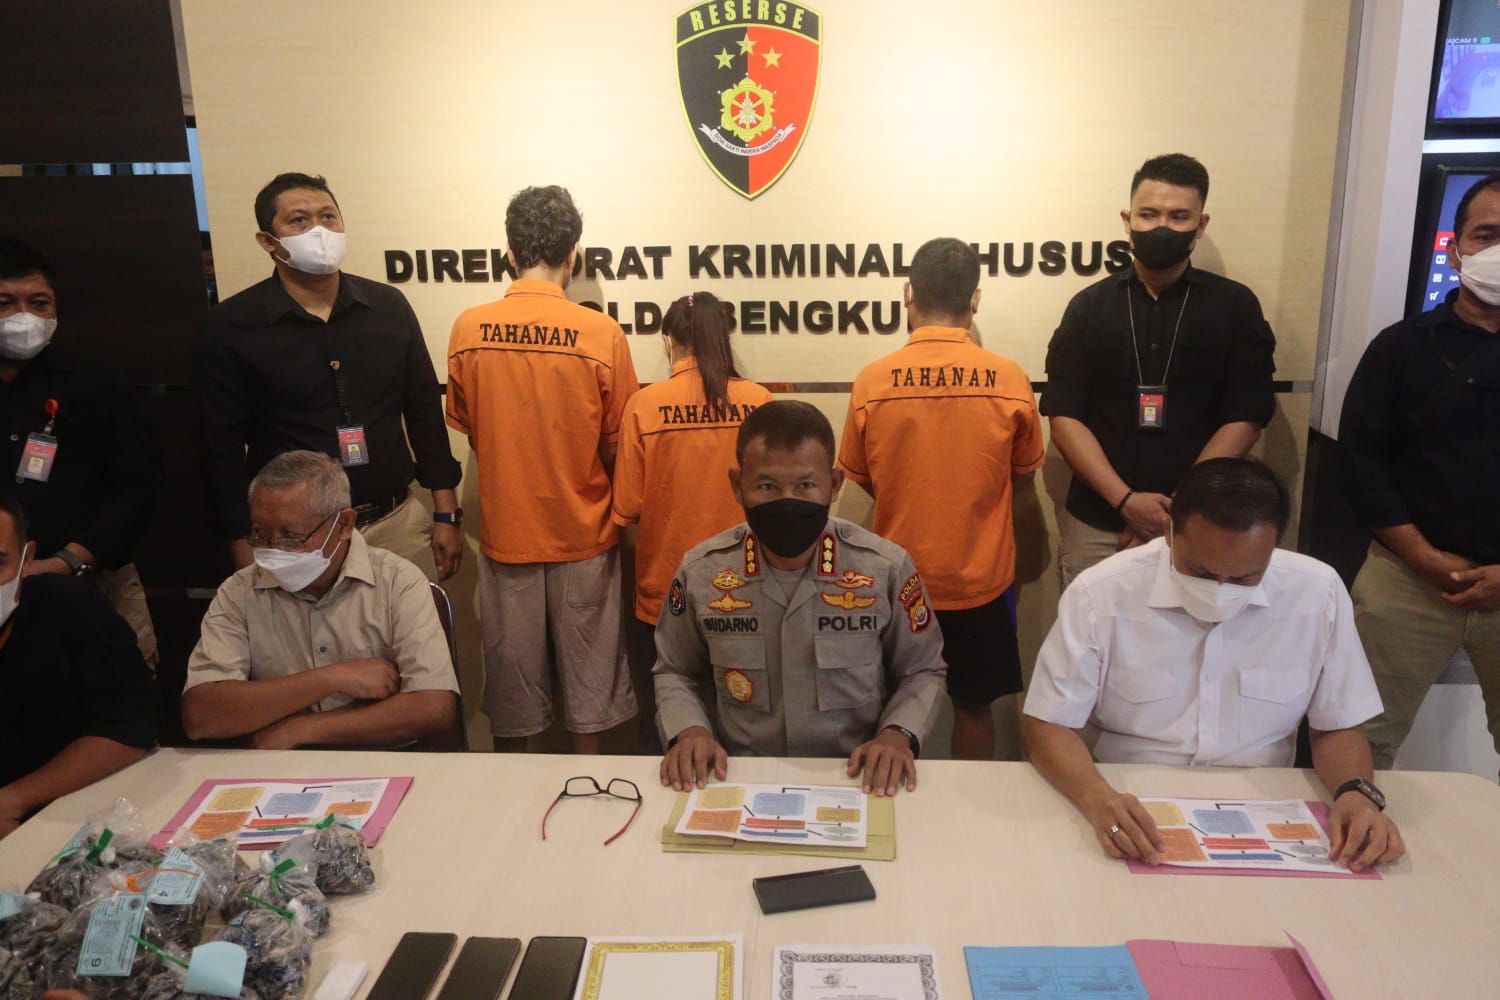 Jual Bibit Sawit Palsu, 2 Warga Riau dan 1 Warga Seluma Ditangkap Polisi